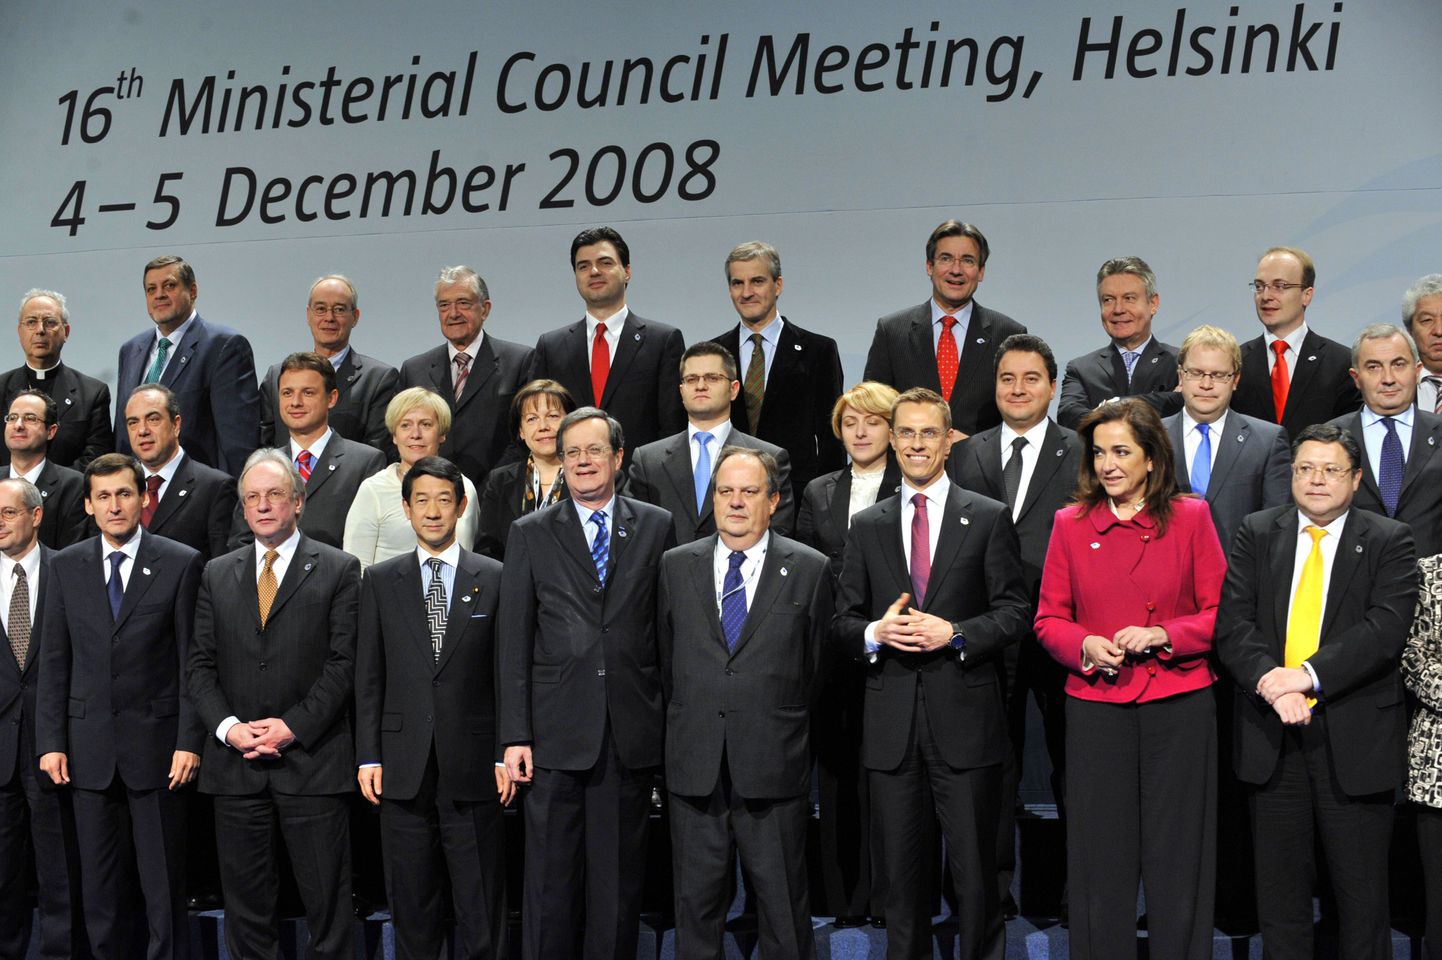 Встреча министров ОБСЕ в Хельсинки в 2008 году